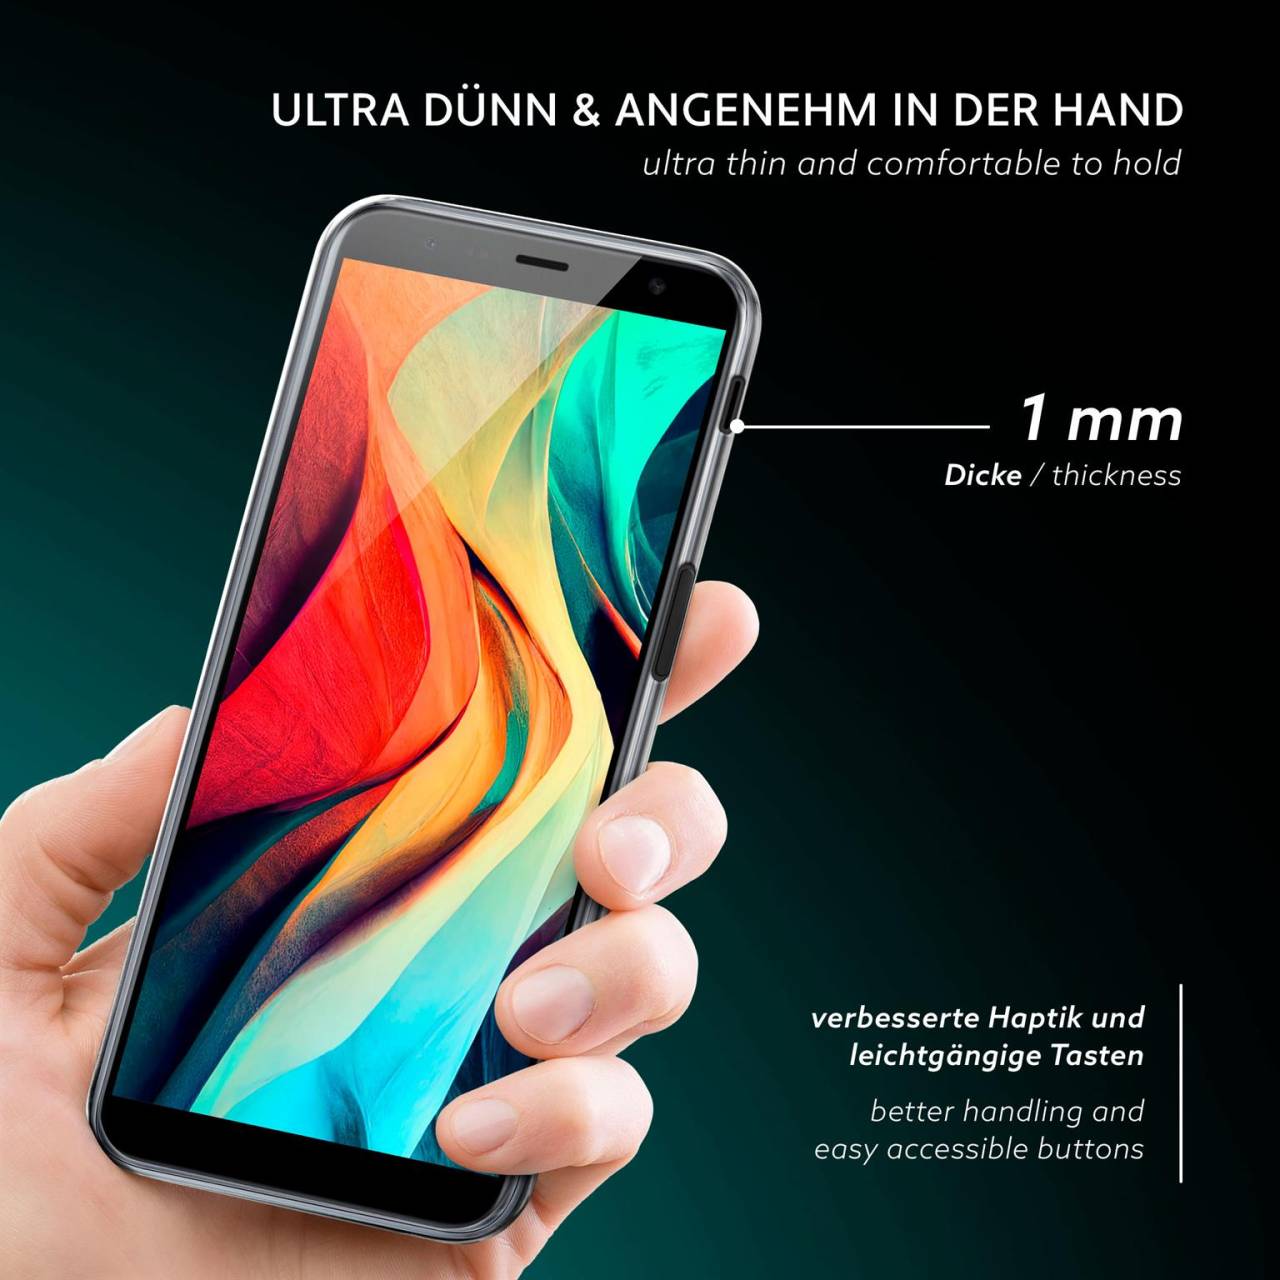 moex Aero Case für Samsung Galaxy J6 Plus – Durchsichtige Hülle aus Silikon, Ultra Slim Handyhülle